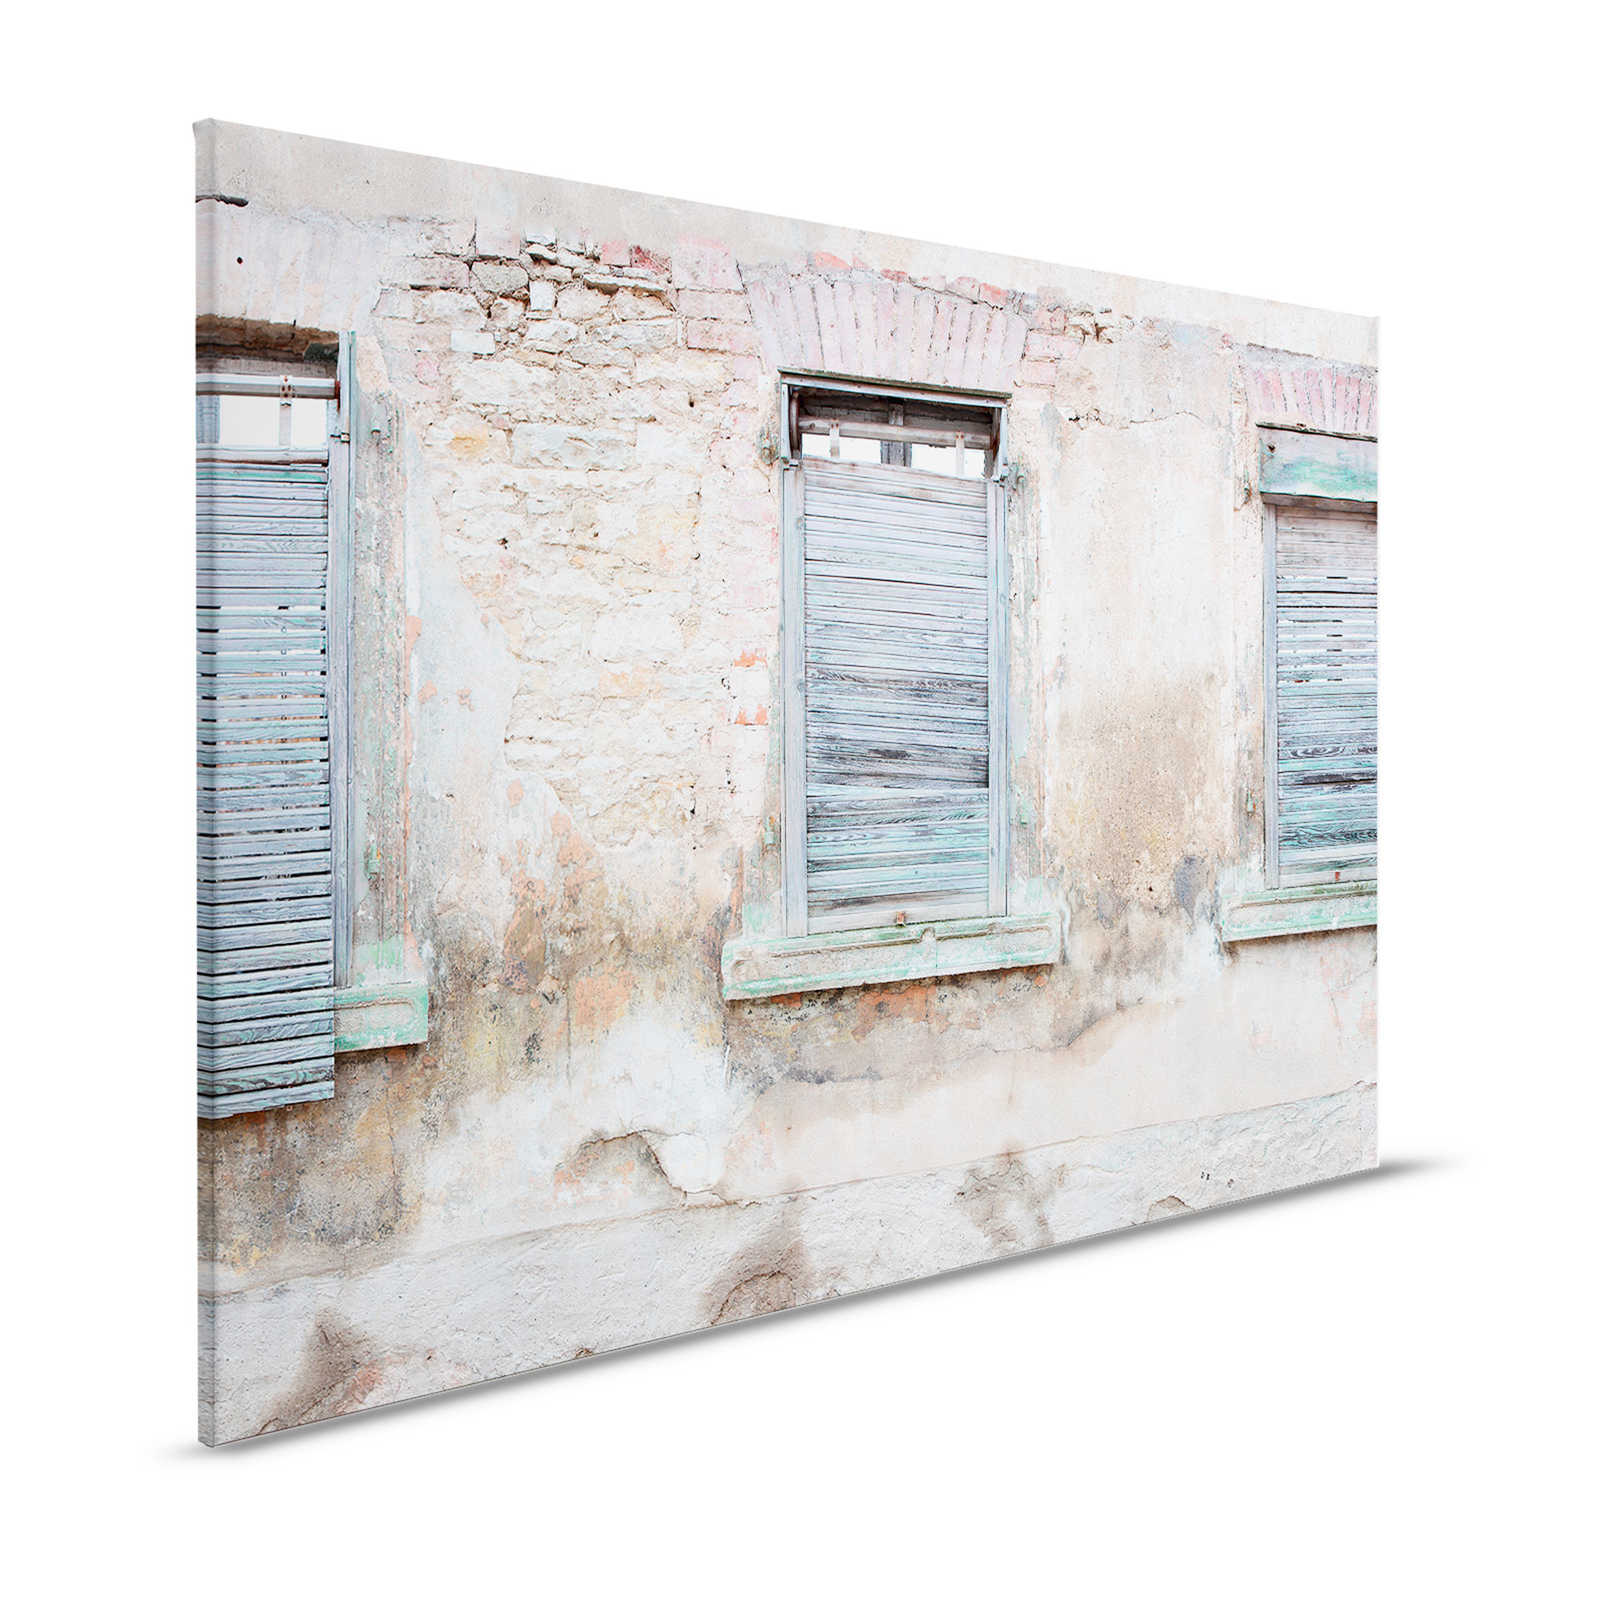 Leinwandbild Ziegelmauer mit rustikalen Fensterläden und Rundbögen – 1,20 m x 0,80 m
